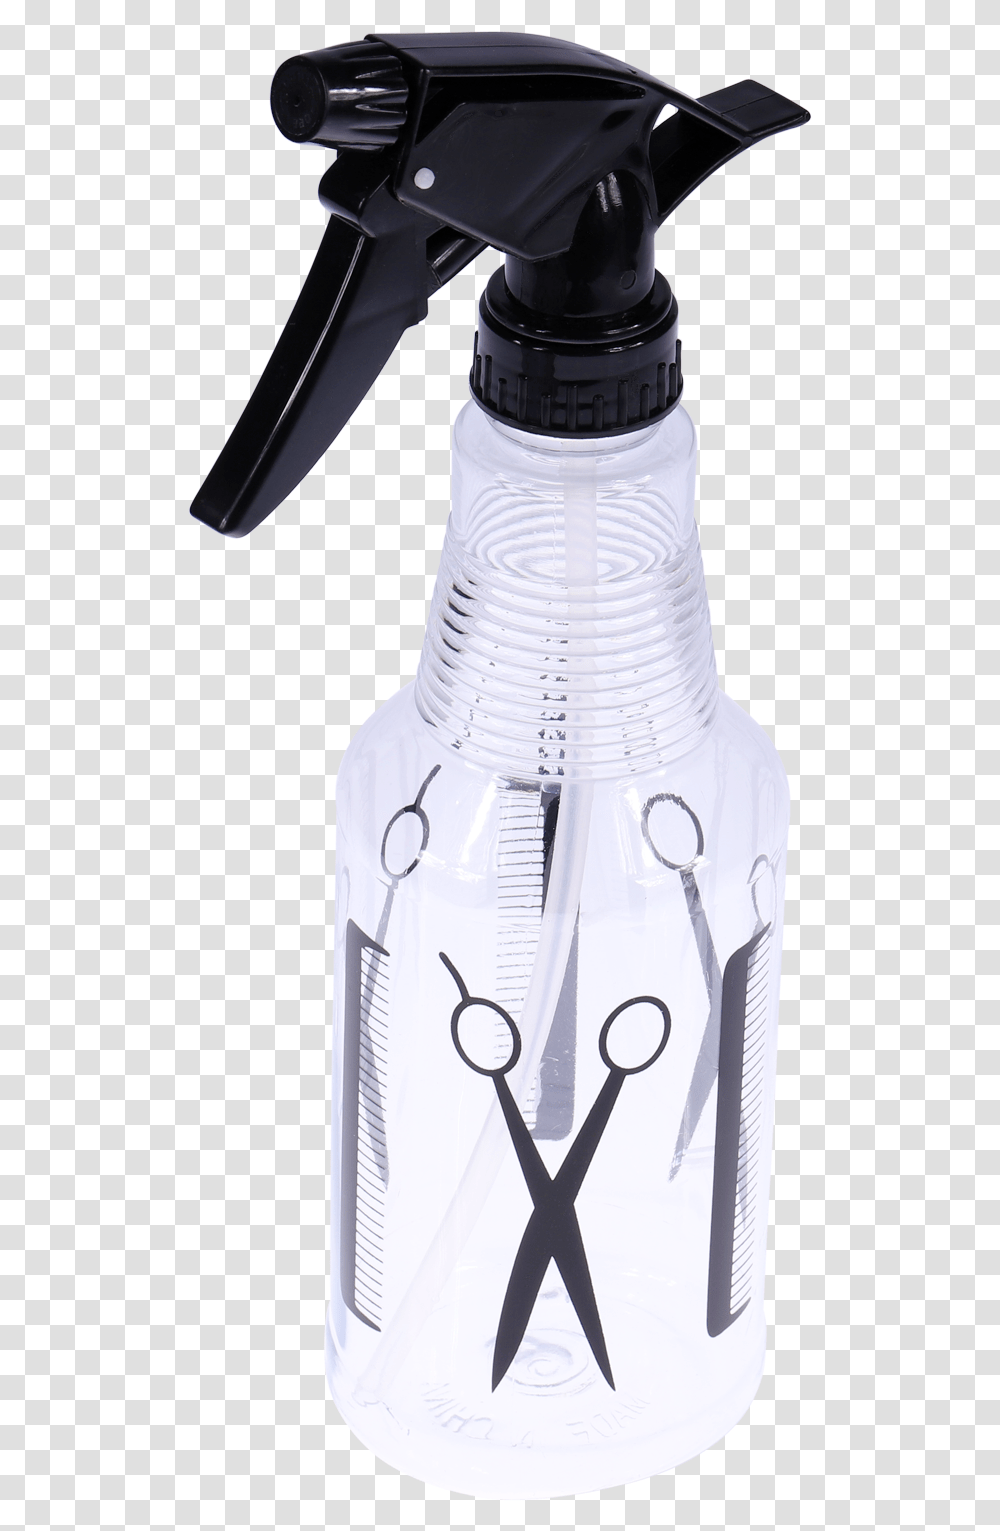 Spray Bottle 16oz Plastic Bottle, Mixer, Appliance, Beverage, Drink Transparent Png